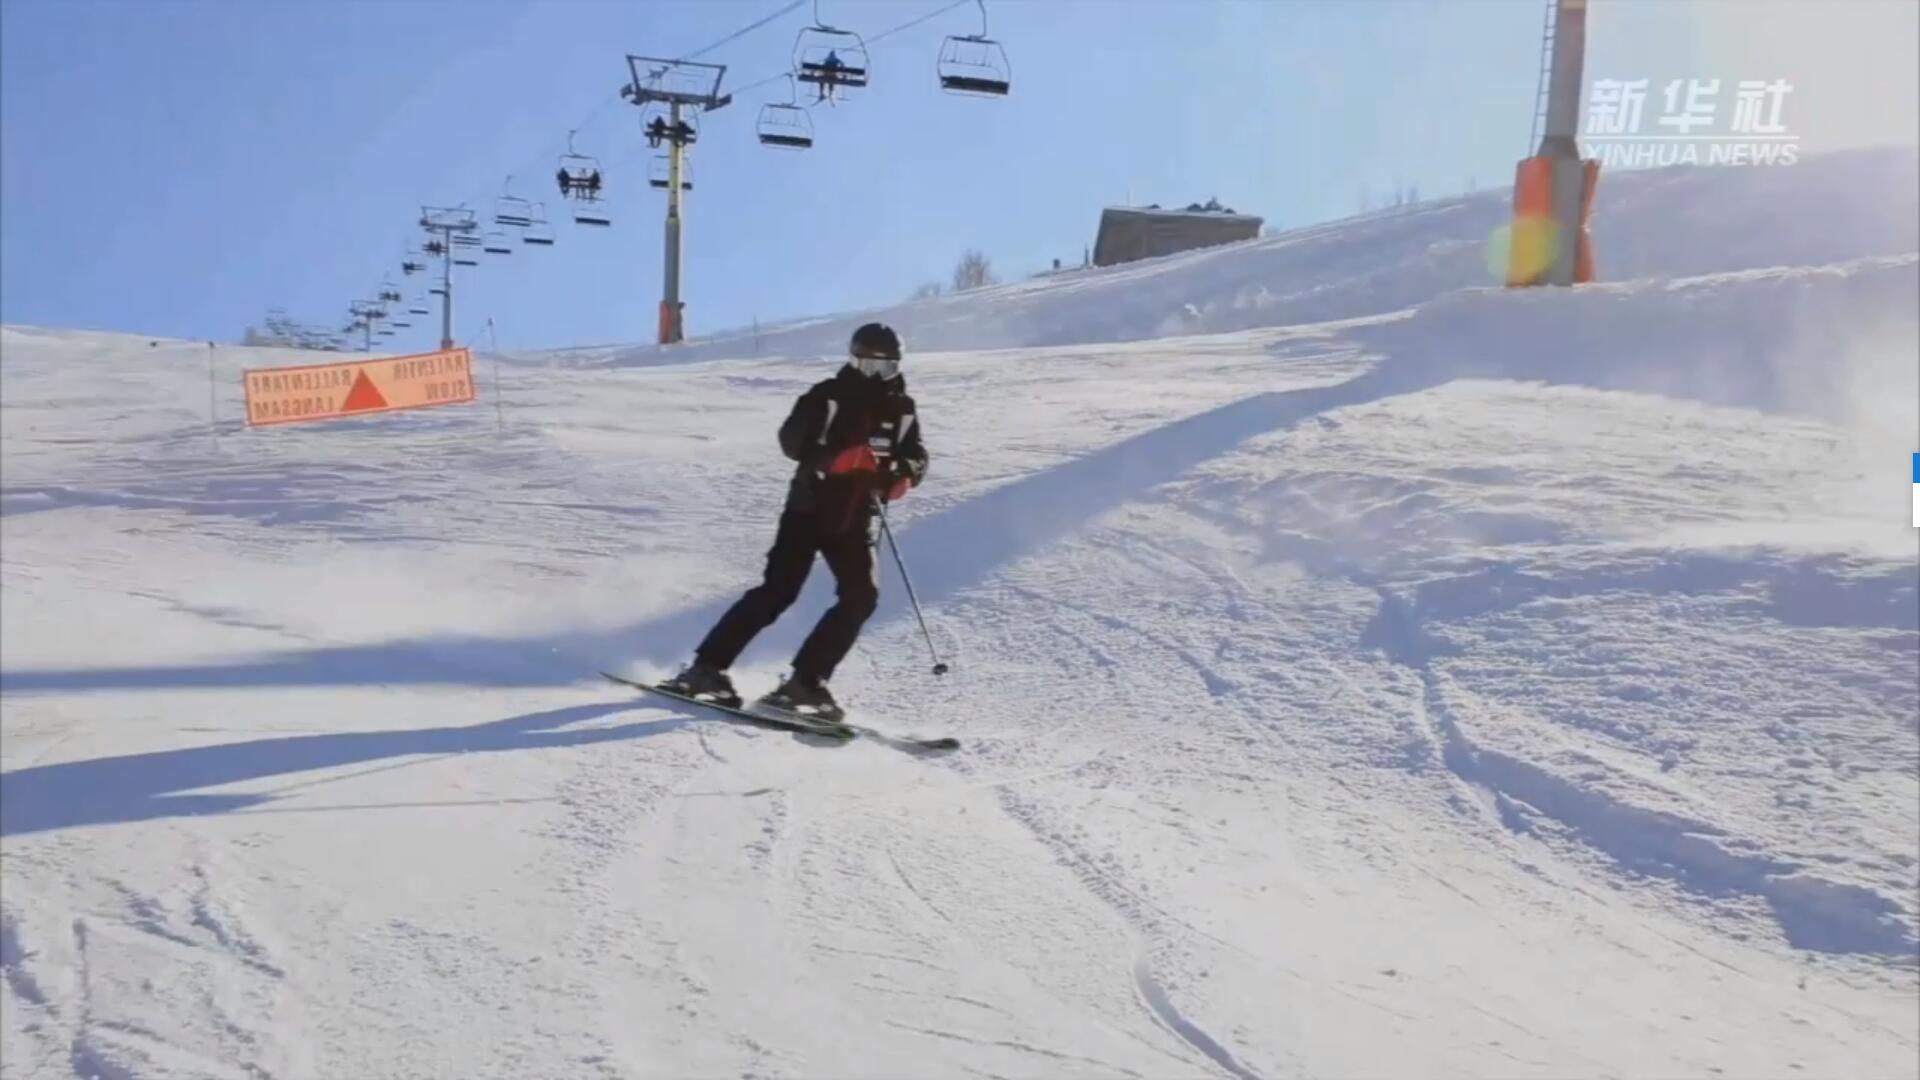 فيديو: الاحتفال بالسنة الجديدة في لبنان من خلال التزحلق على الثلج